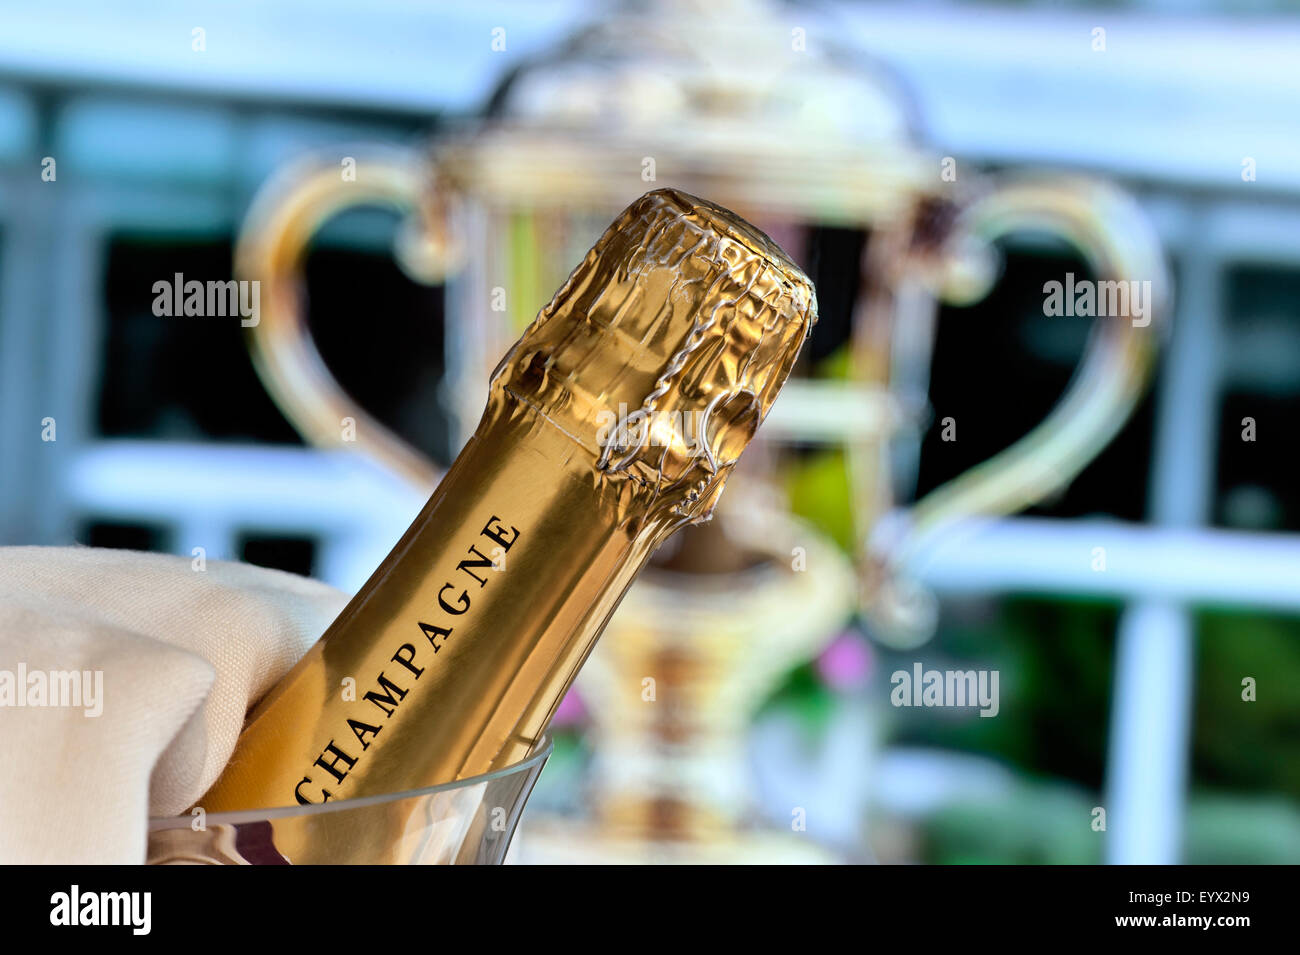 PRIX DE LA COUPE D'OR ASCOT Fermer la vue sur une bouteille de champagne dans une cave à vin avec la coupe d'or Royal Ascot Ladies Day en arrière-plan Ascot Berkshire Royaume-Uni Banque D'Images